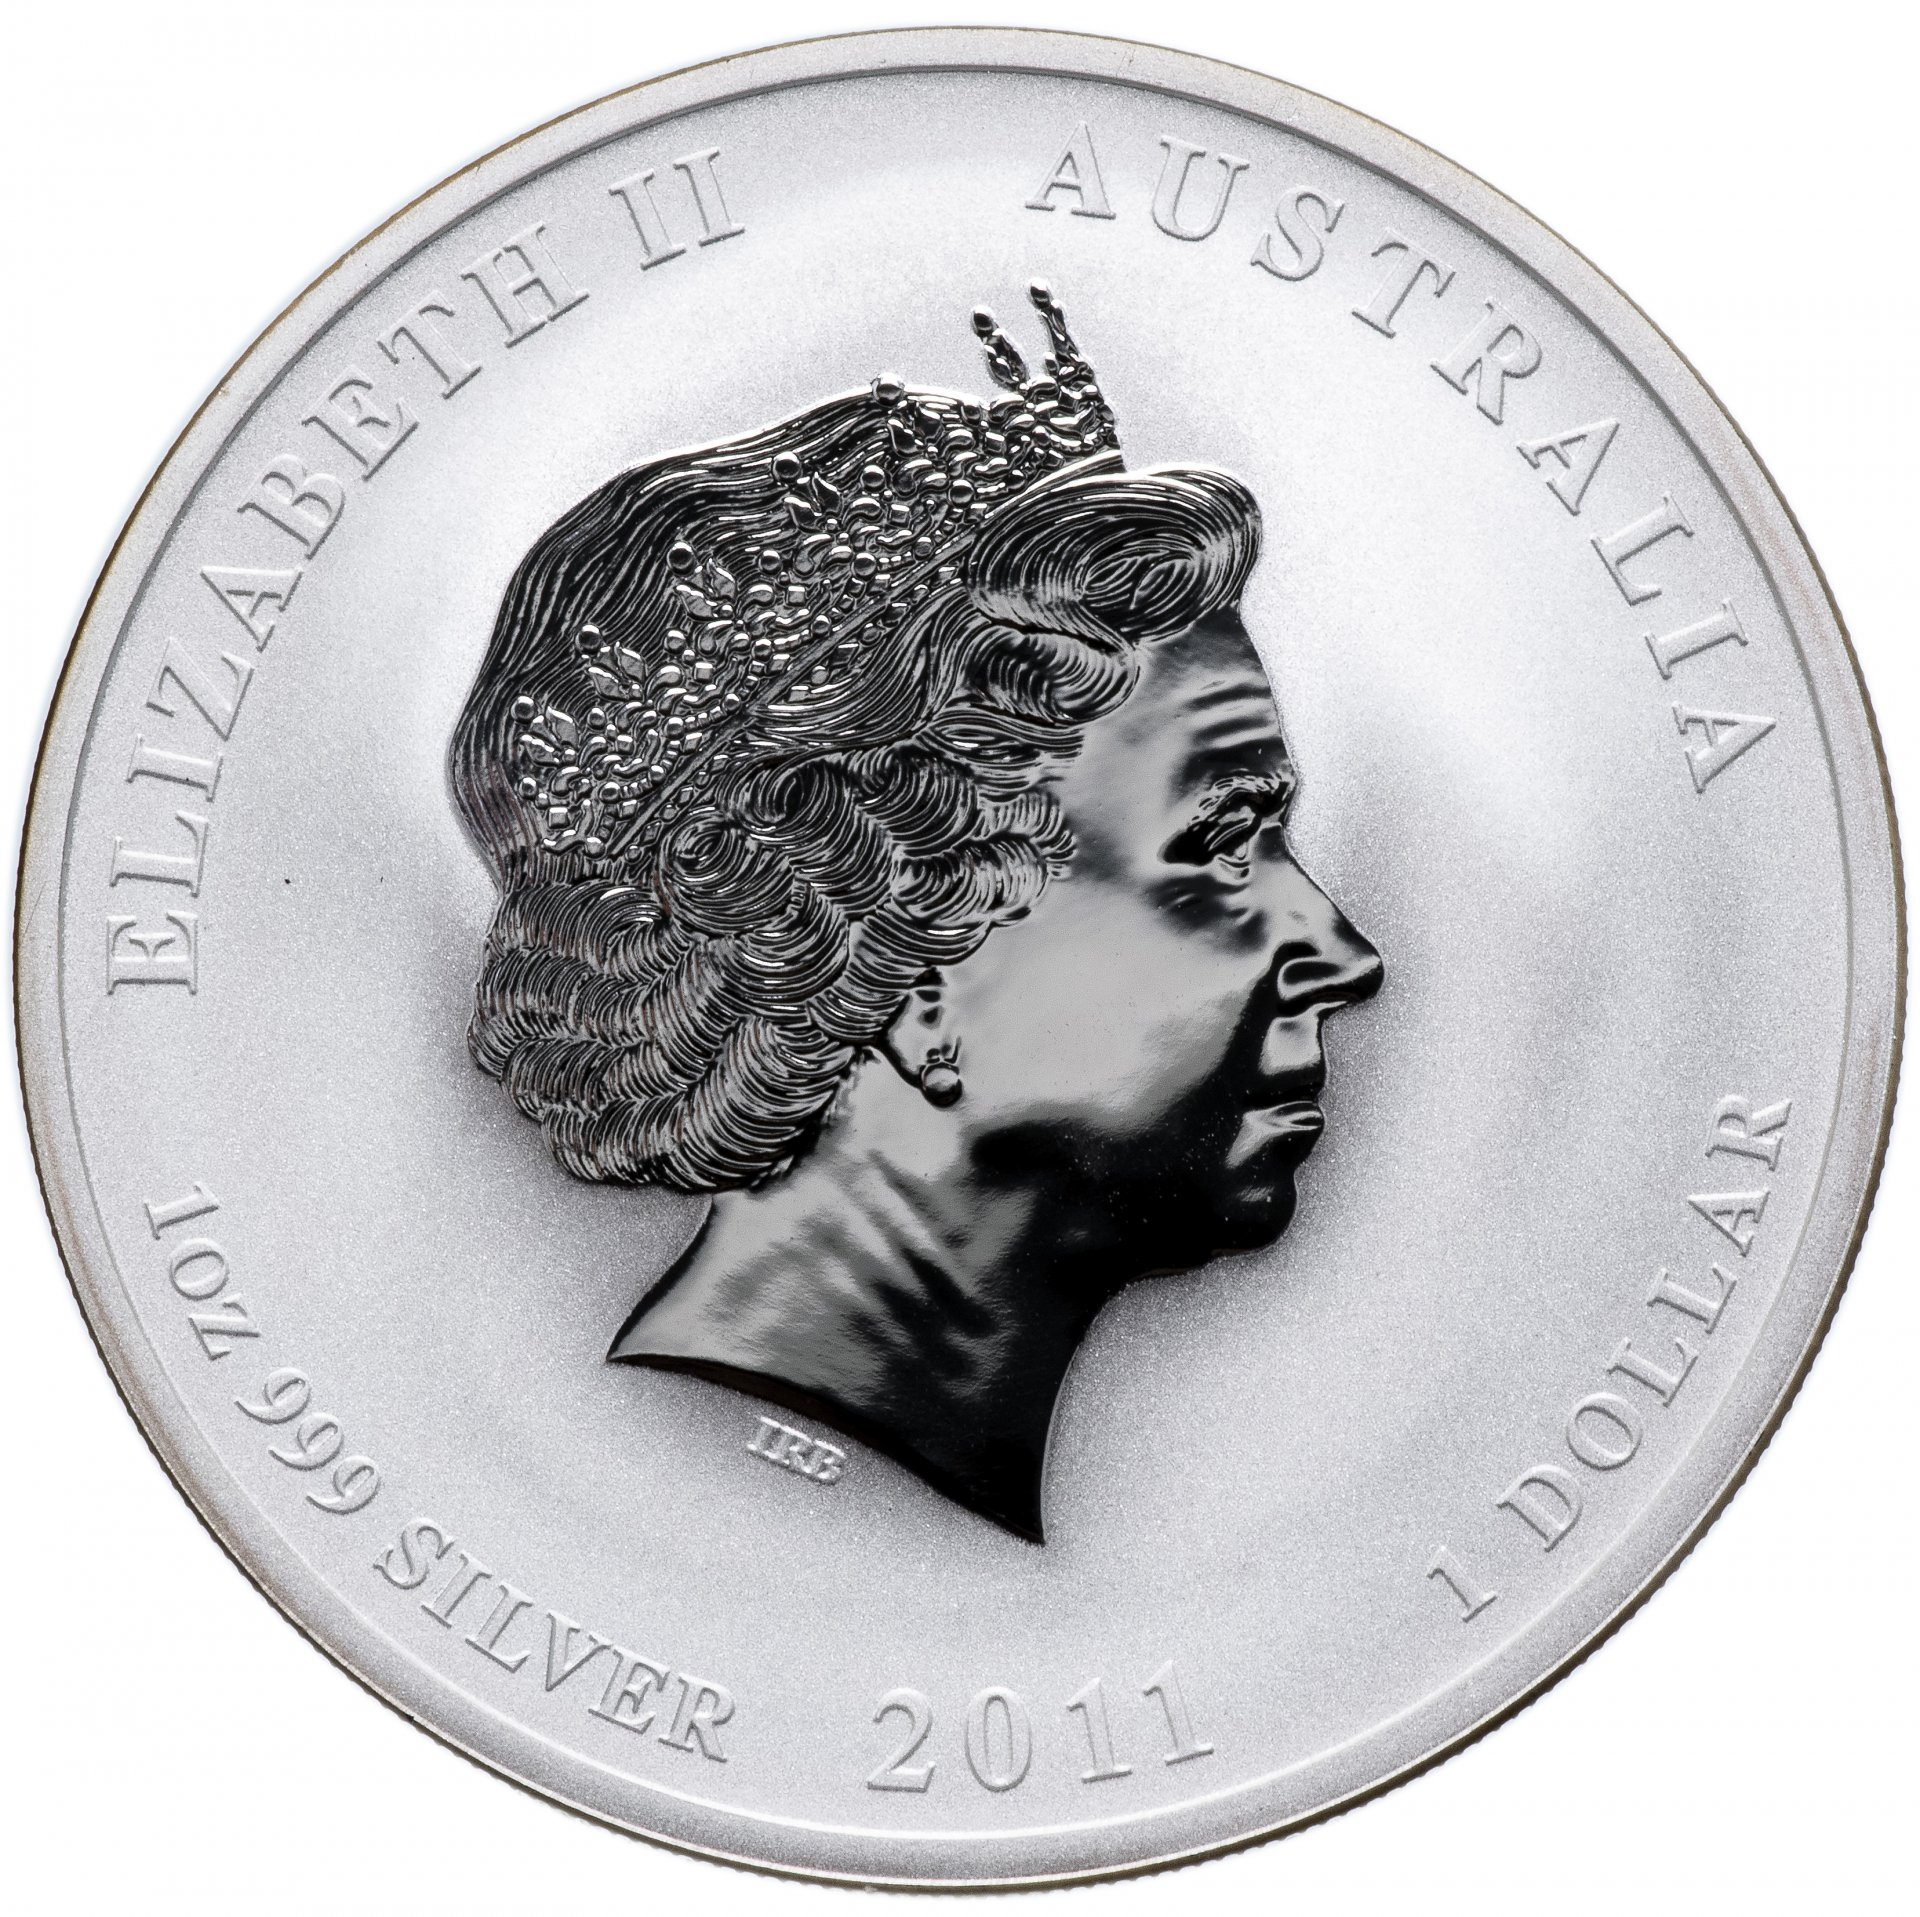 1 Доллар 2011 серебро. 1 Доллар Австралии серебро 2011 год. Австралия 1 доллар, 2011 год кролика. Австралия 1 доллар 2011. 1 доллар австралия серебро